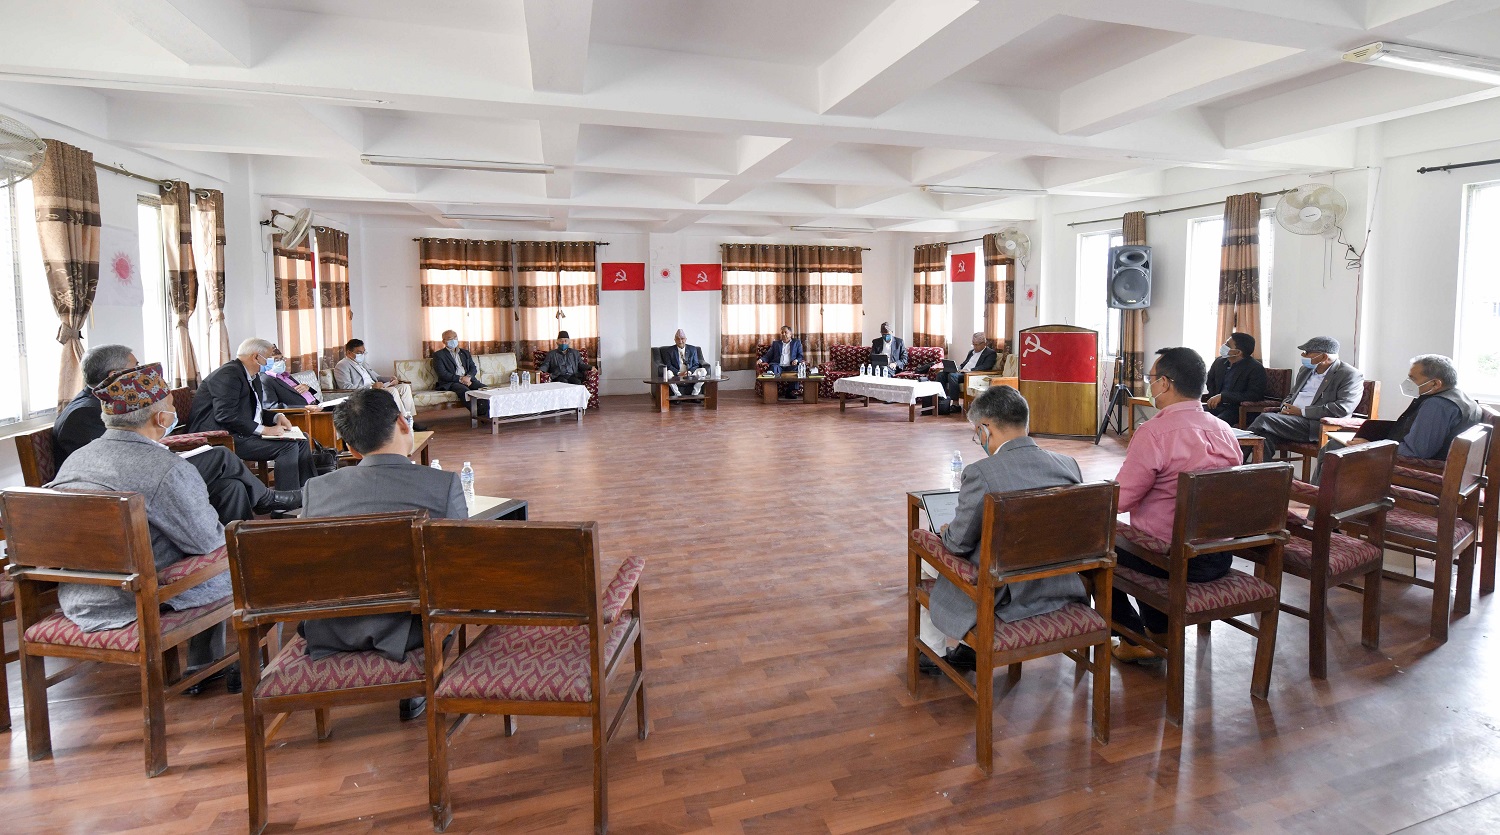 प्रमुख प्रतिपक्षी एमालेको केन्द्रीय कमिटी बैठक बस्दै